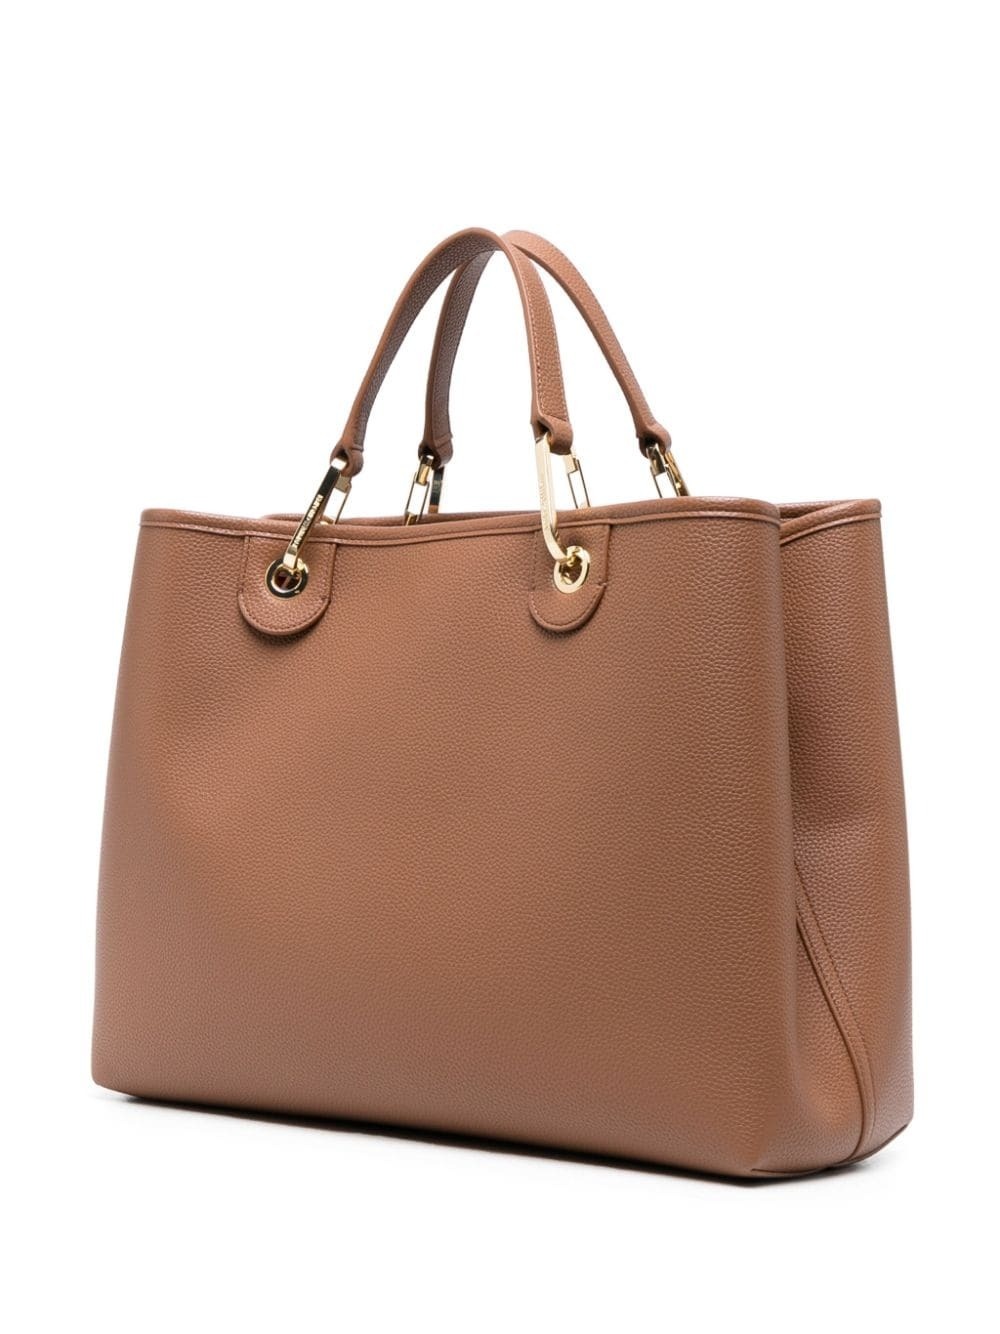 EMPORIO ARMANI - Medium Shopping Bag